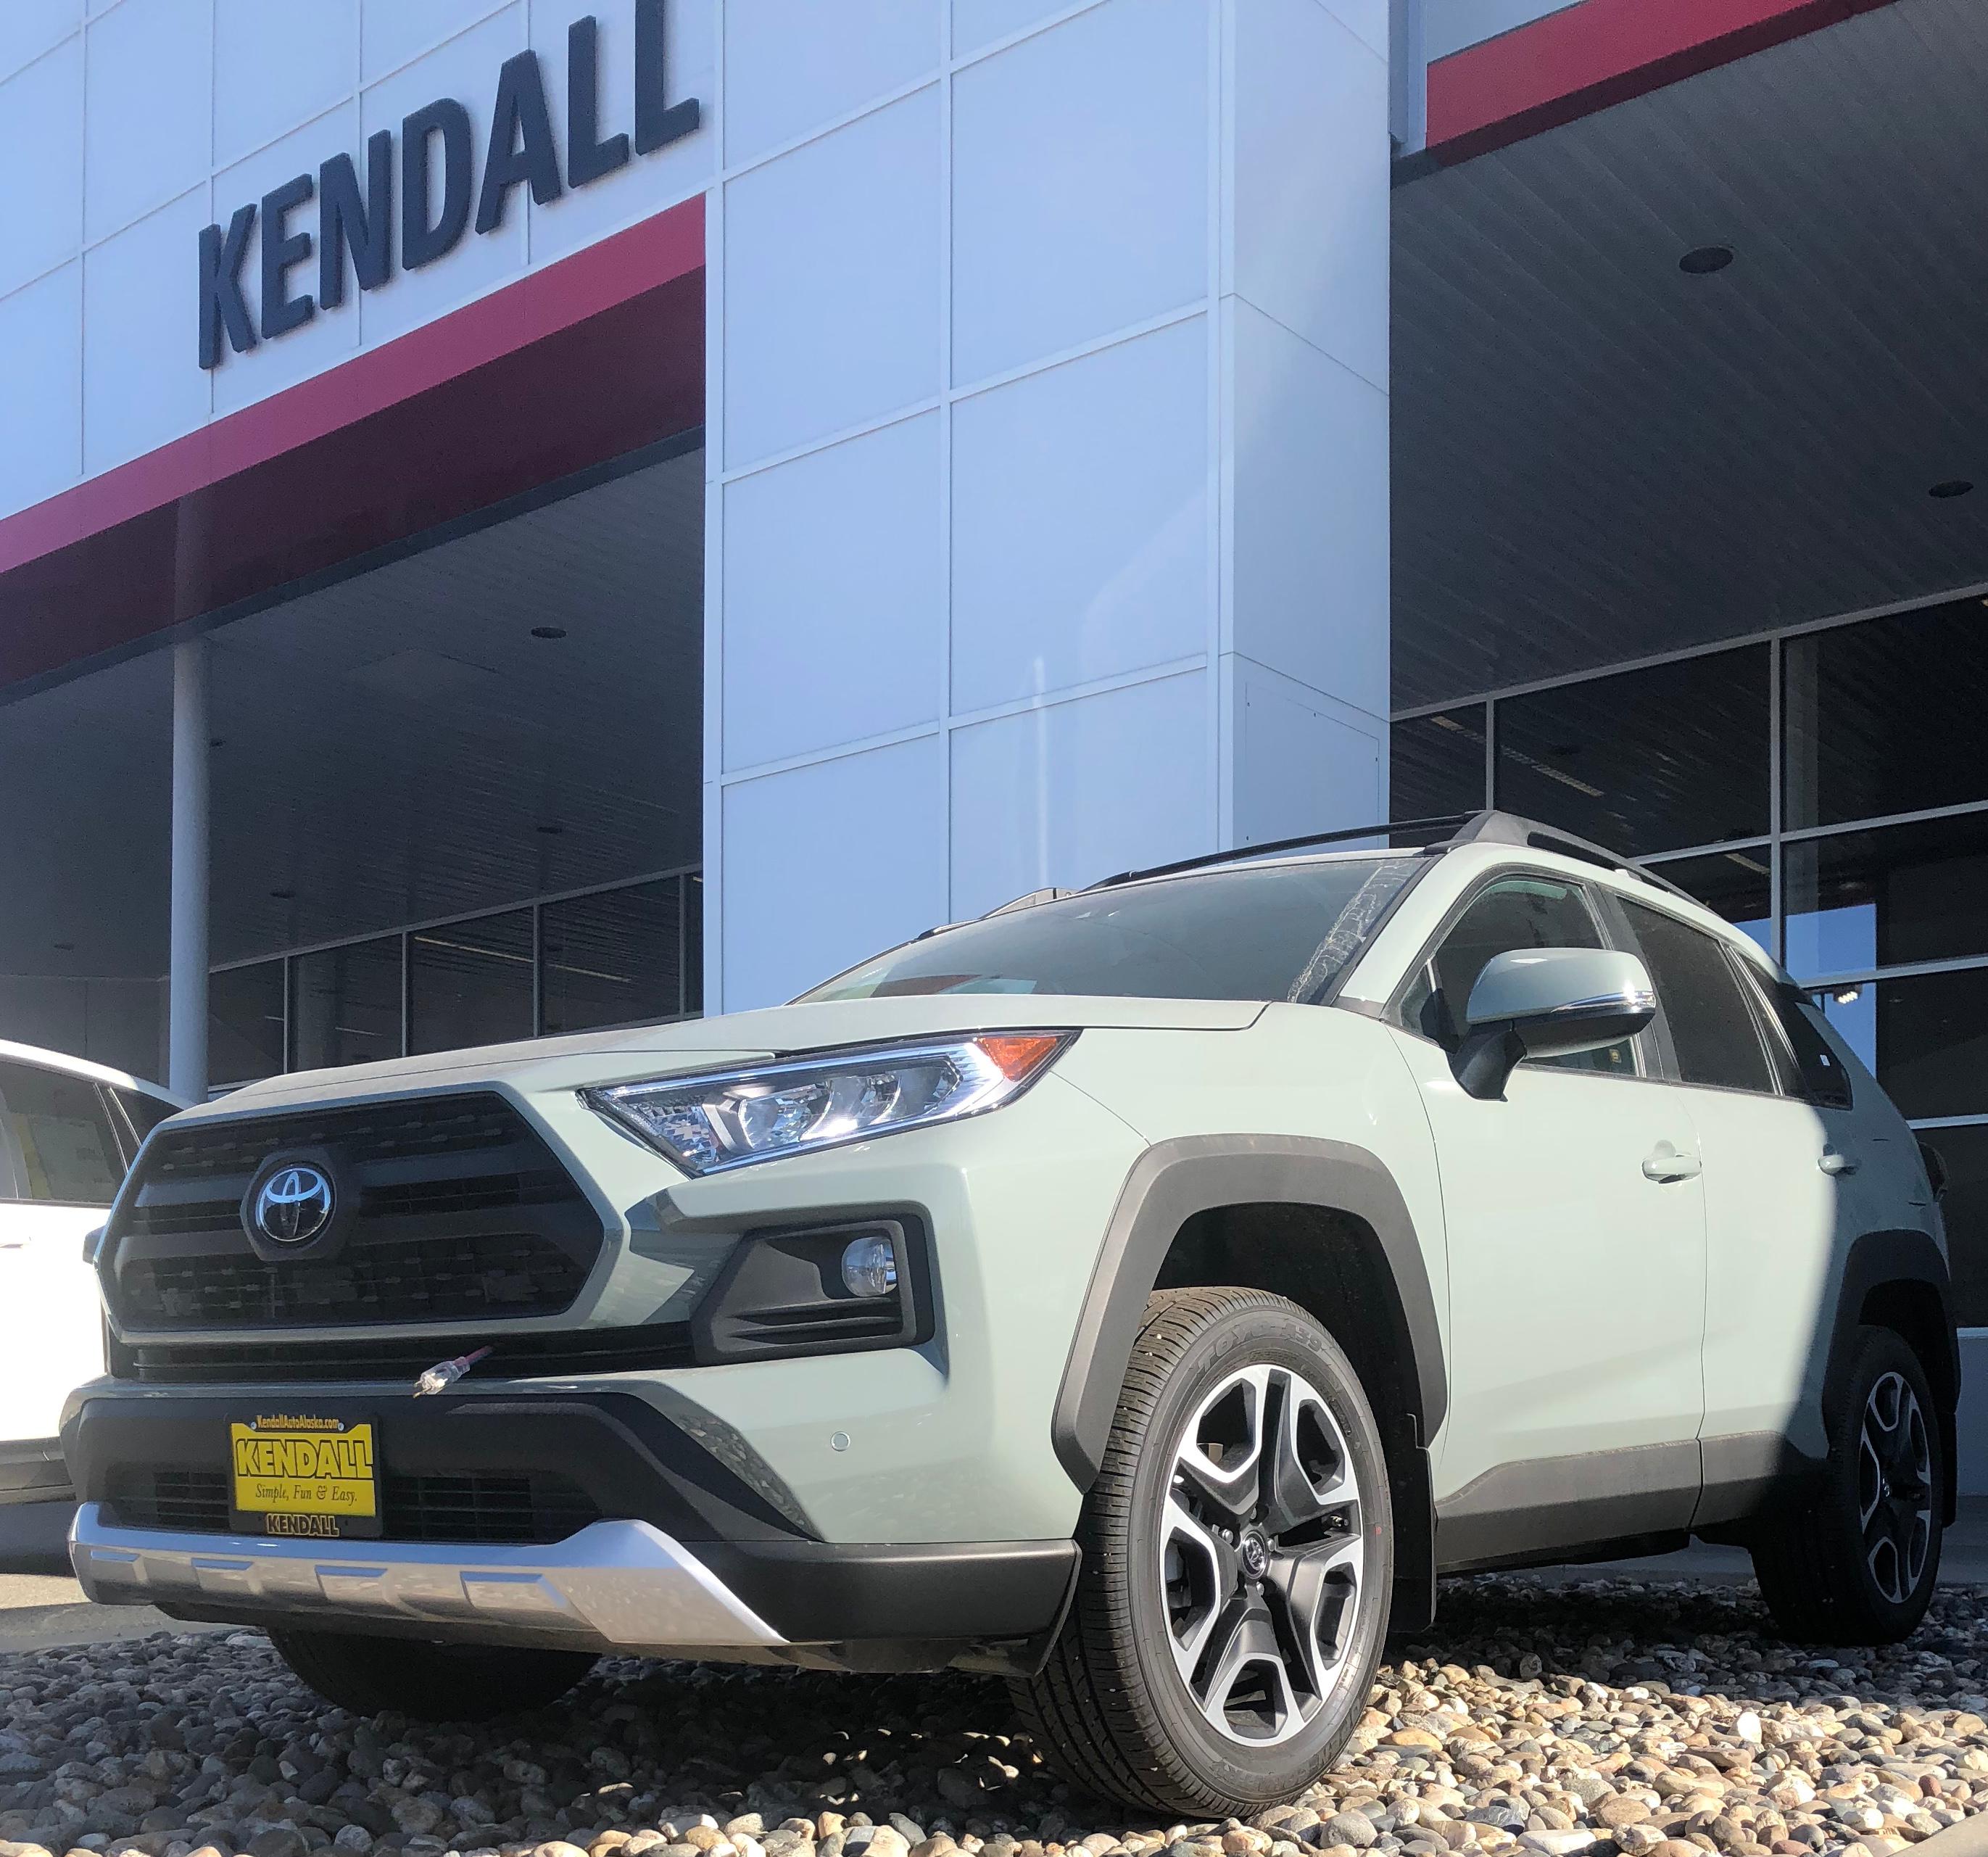 Kendall Toyota of Fairbanks Fairbanks (855)501-0606